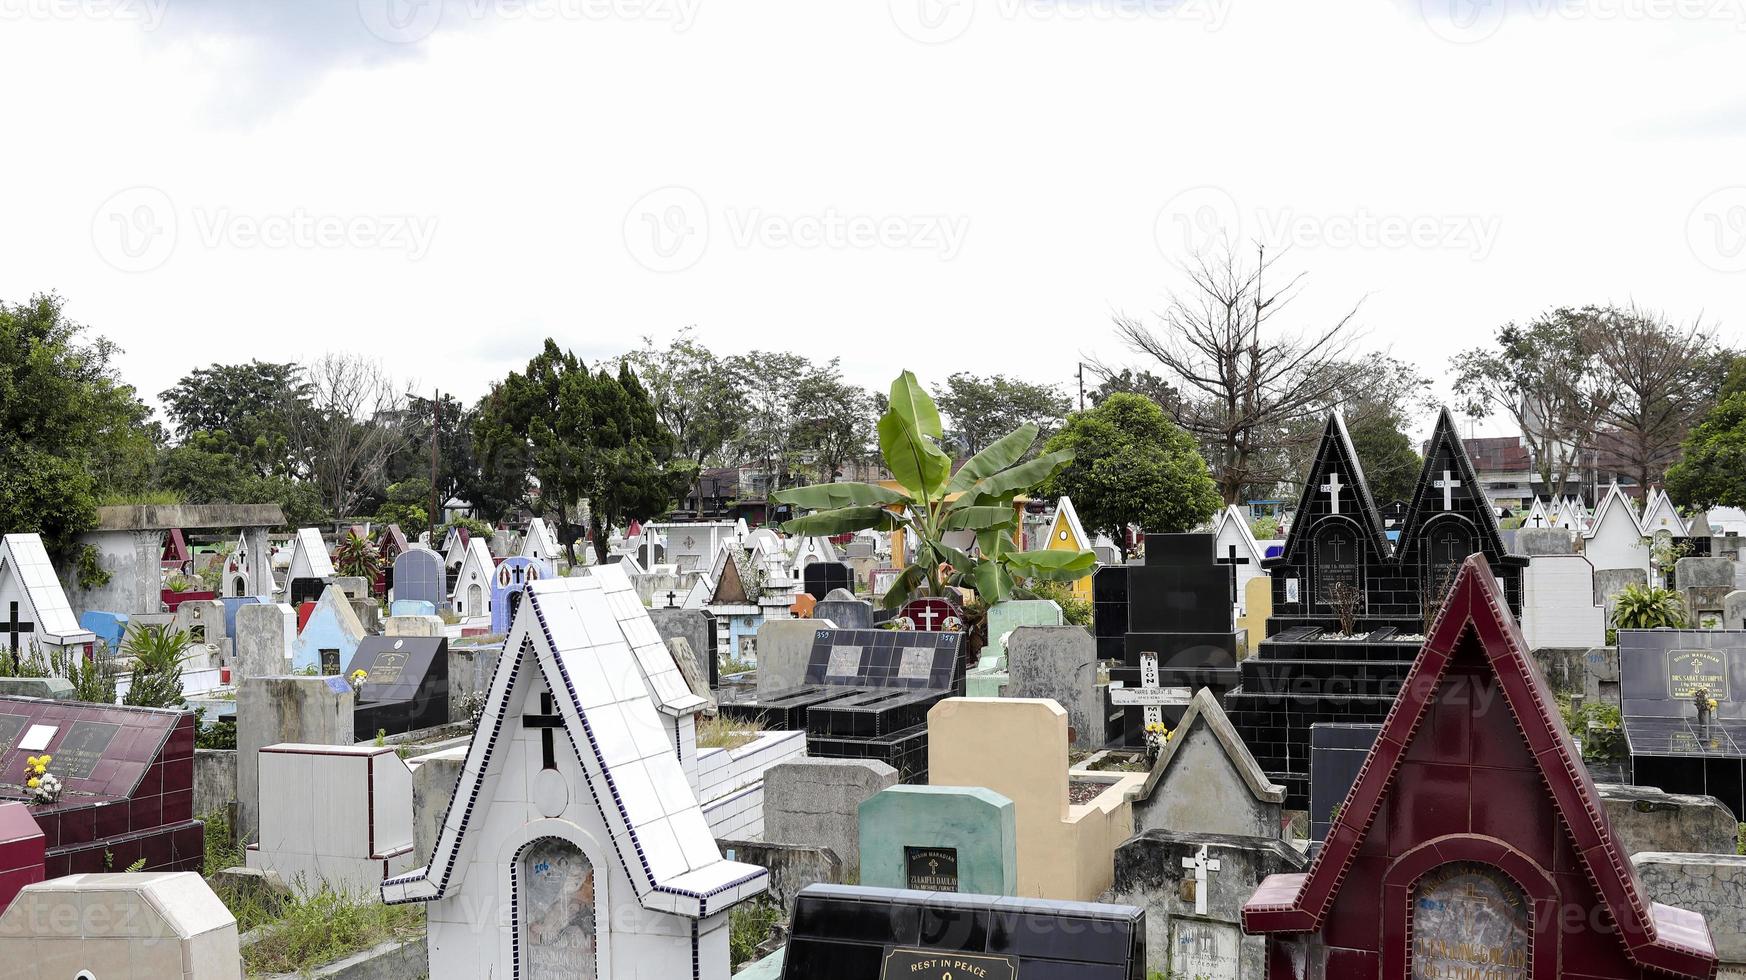 cemitério público com sepulturas variadas. foto